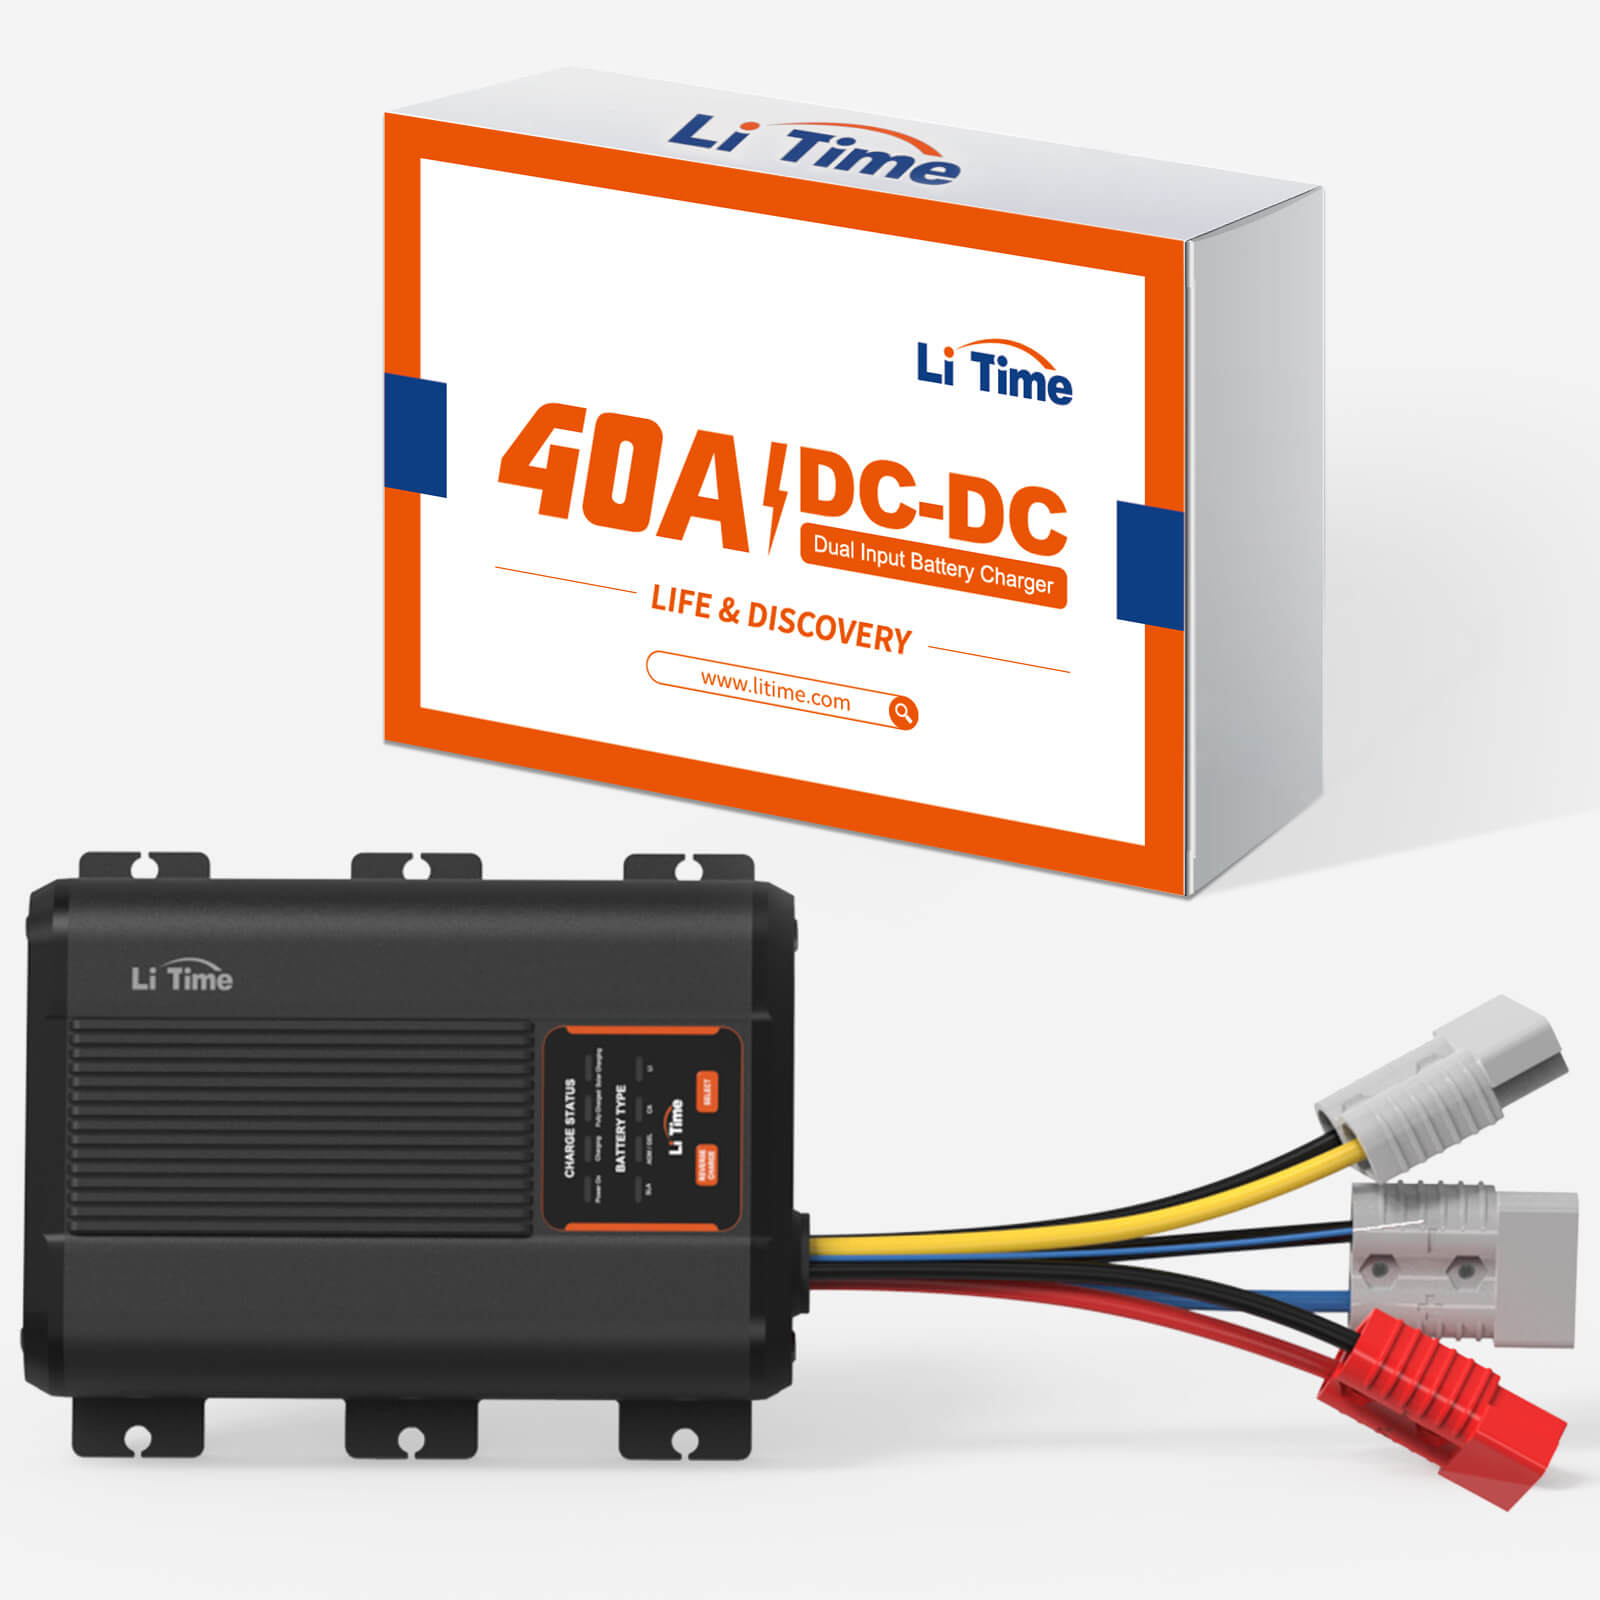 LiTime 12V 40A DC zu DC Batterieladegerät für 12V LiFePO4, Blei-Säure, –  LiTime-DE